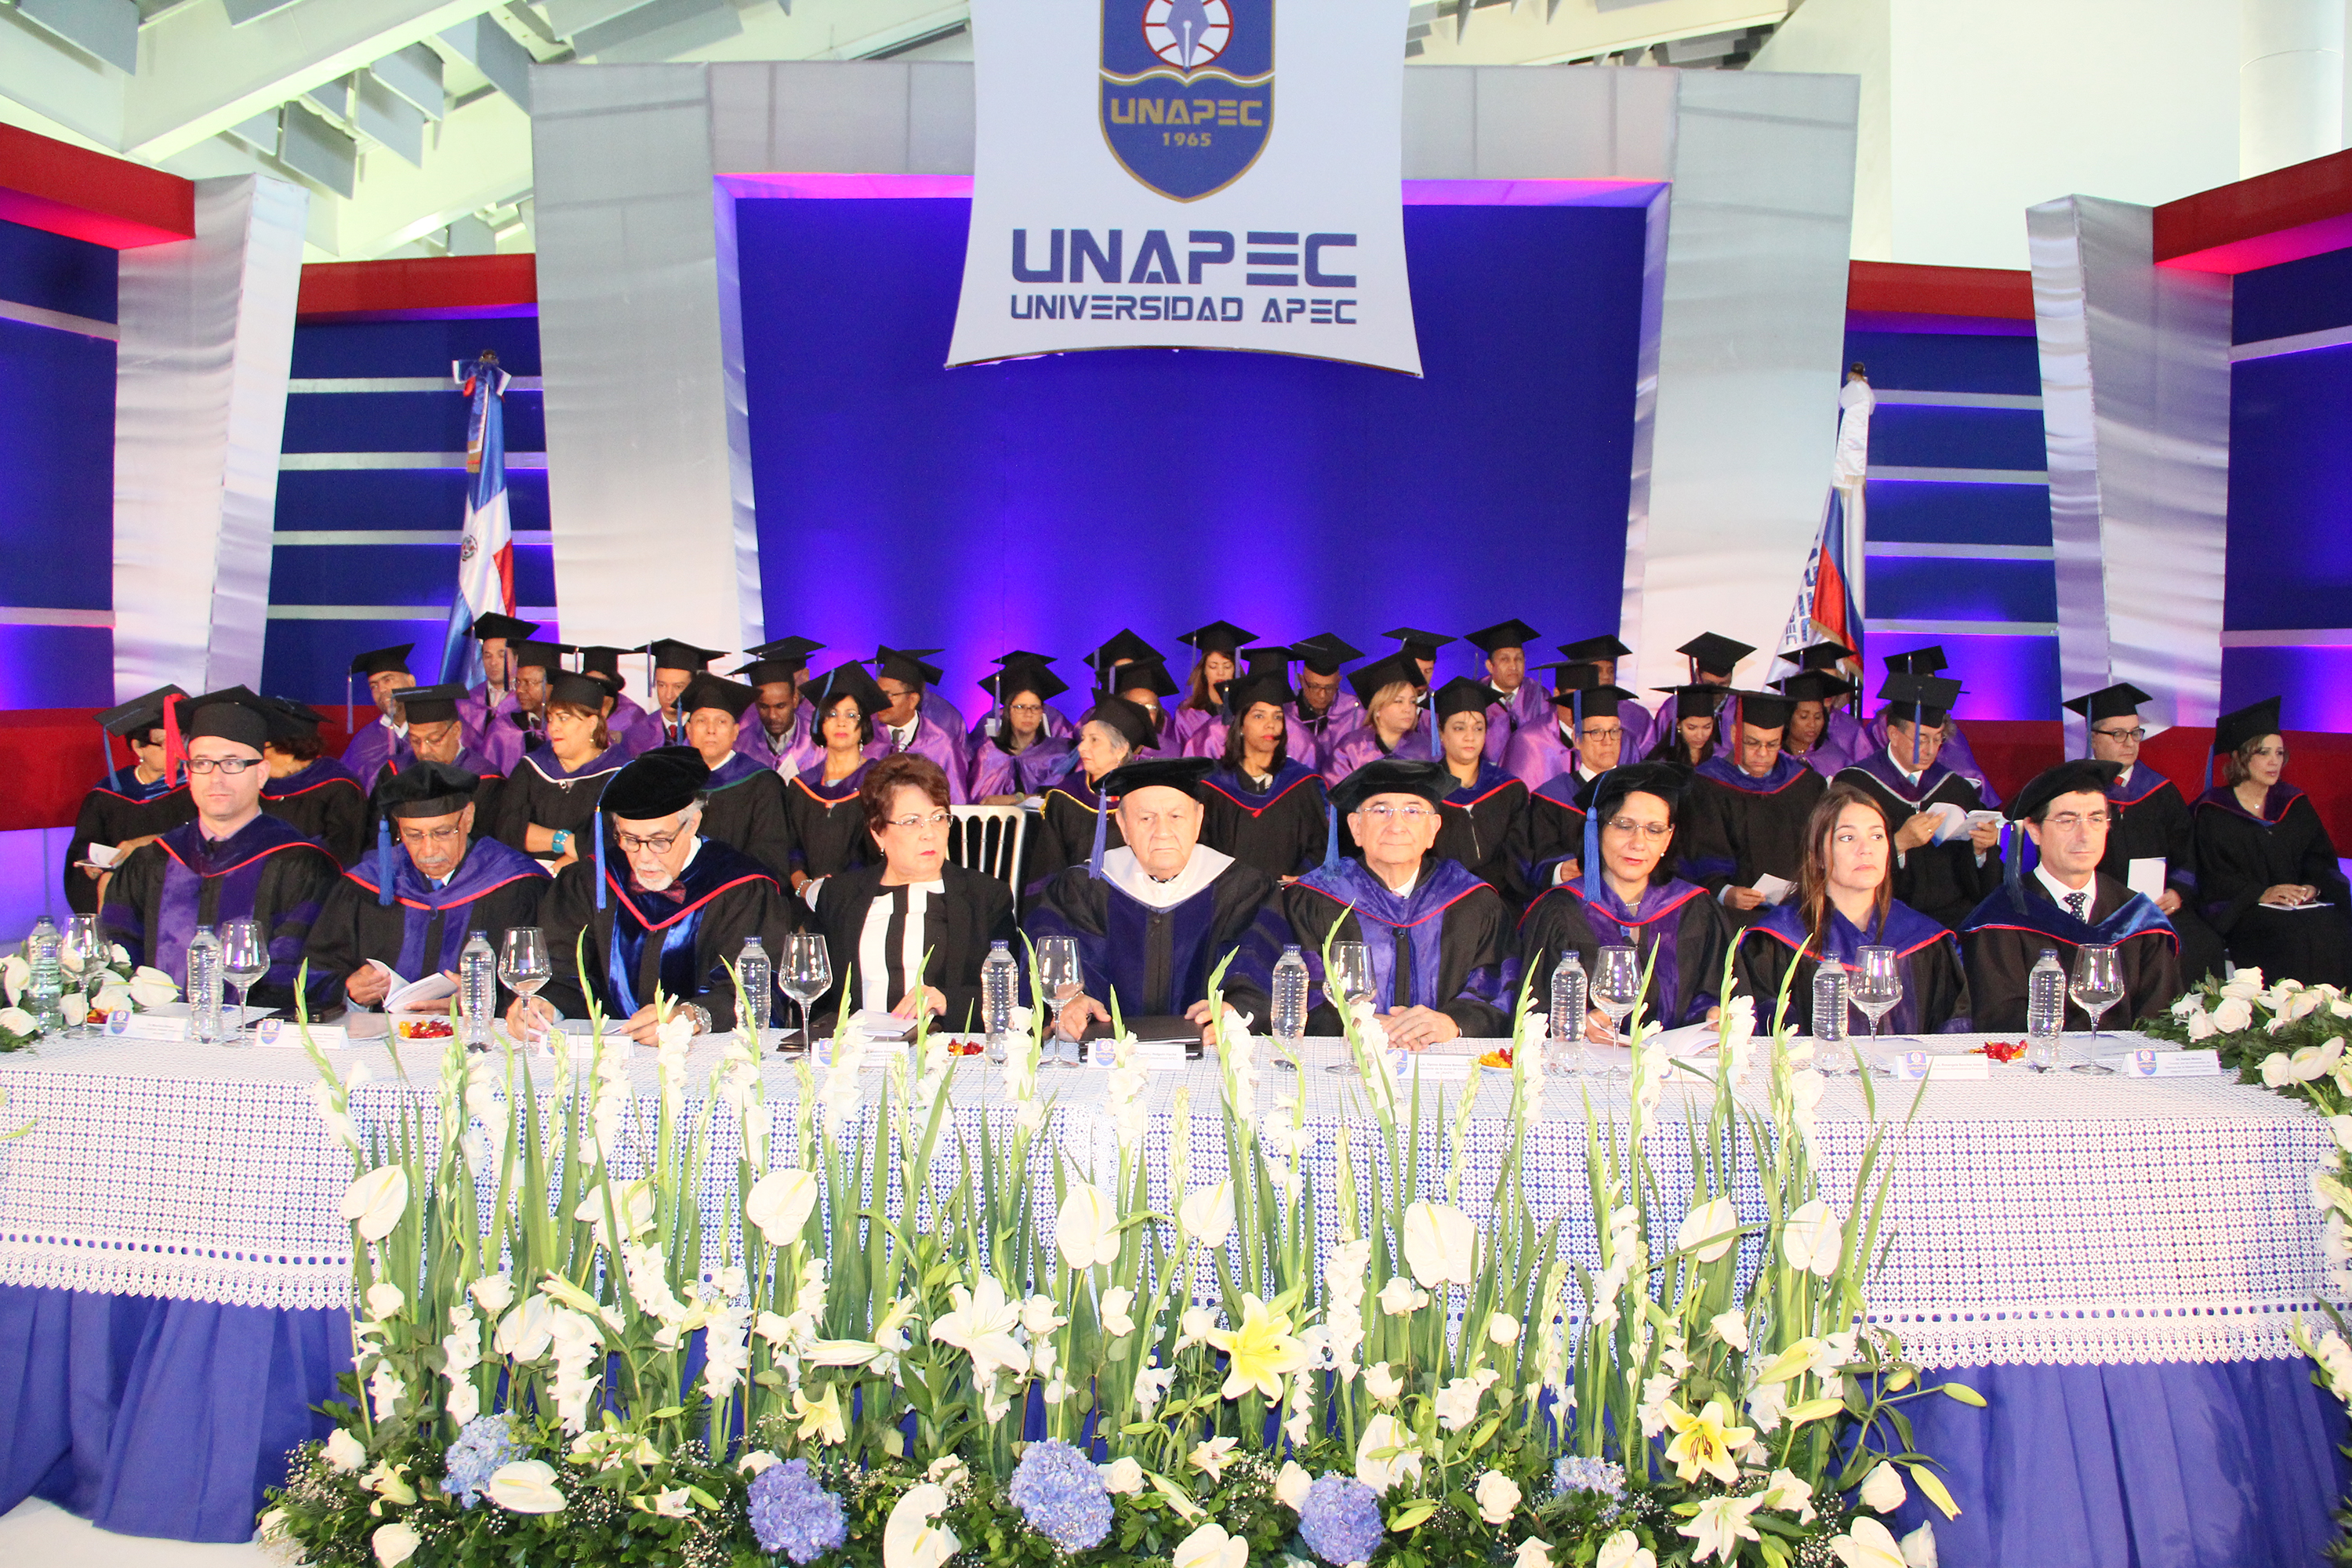  UNAPEC gradúa más de mil profesionales; rector afirma urge aplicación de valores éticos